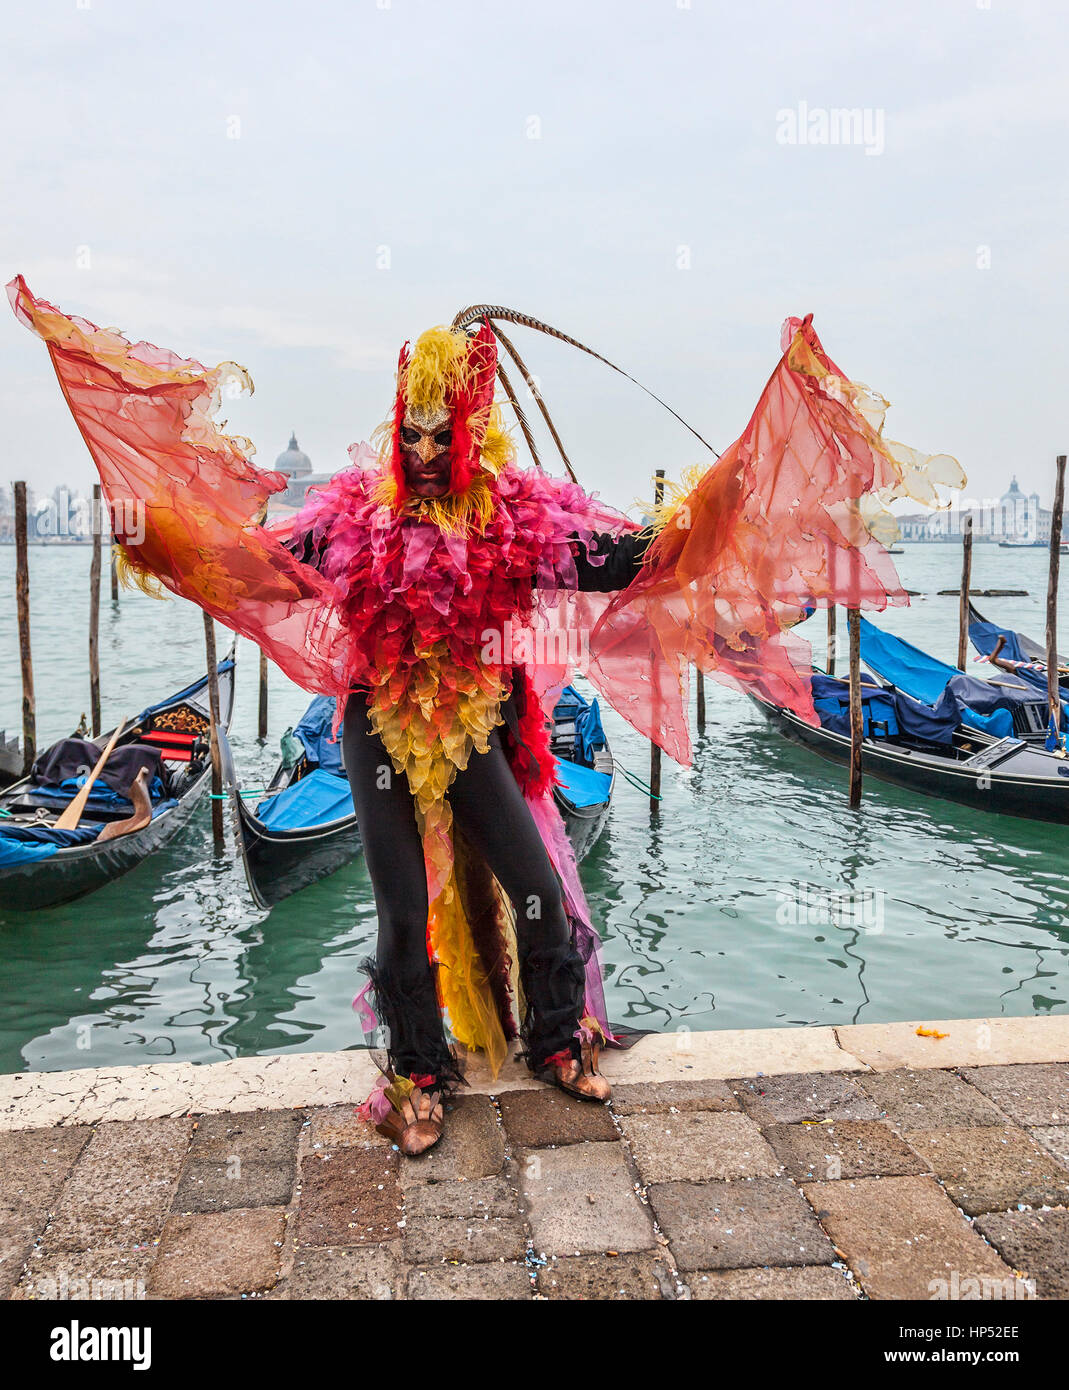 Venedig, Italien - 19. Februar 2012: ein Mann verkleidet in einem bunten Kostüm tanzen vor der Gondel Dock in Venedig während der Karneval-Tage. Stockfoto